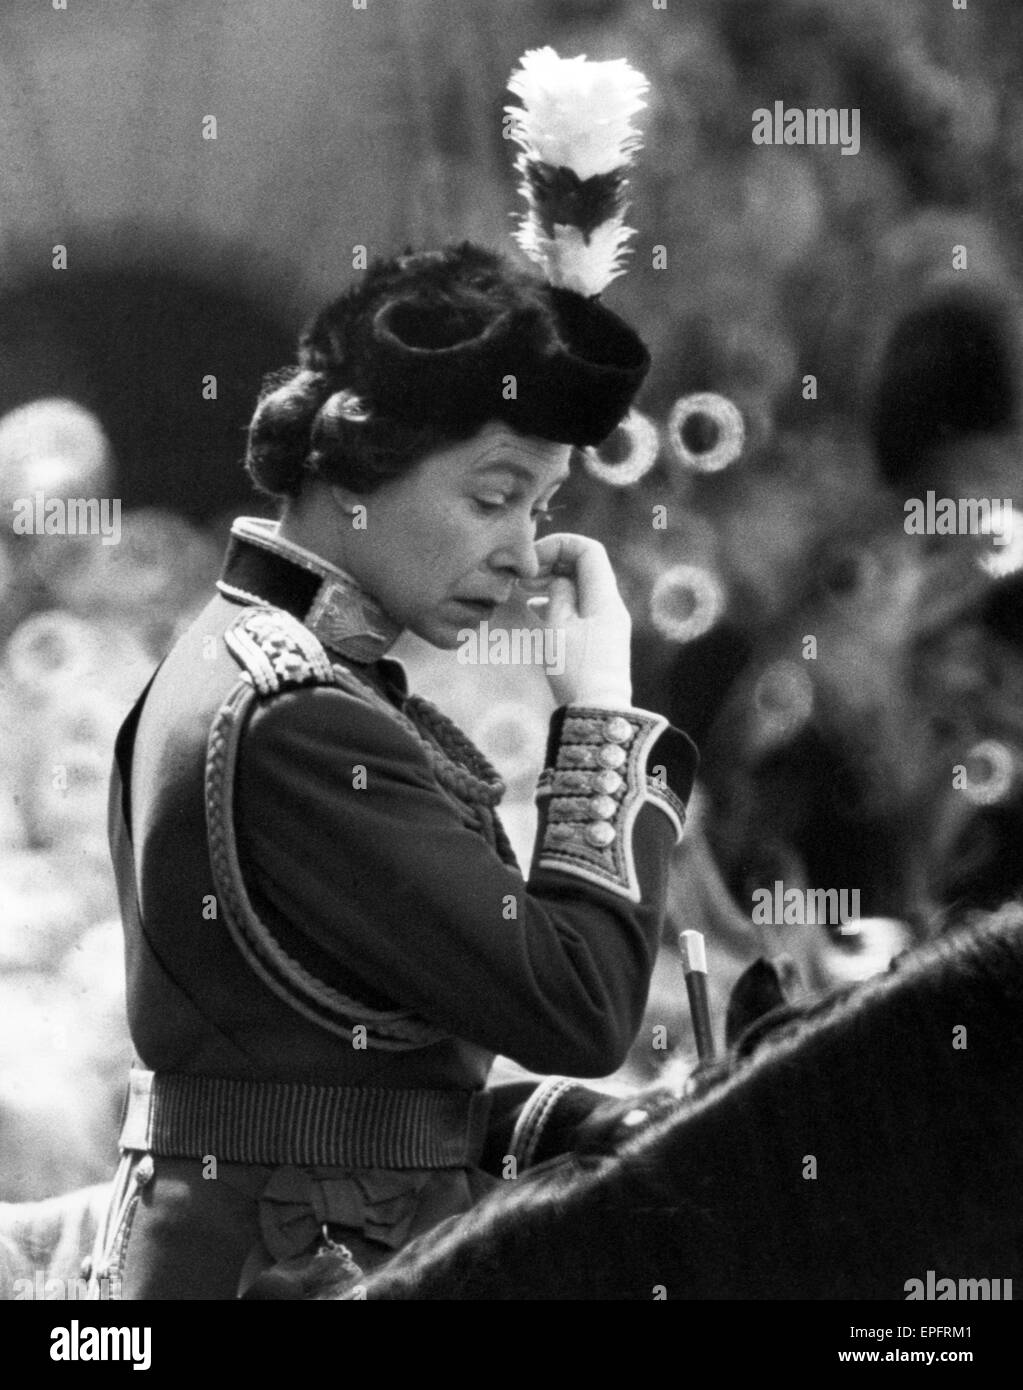 La Reine prend part à la parade de la cérémonie des couleurs avec 1er Bataillon Welsh Guards, Horse Guards Parade, Londres, 2 juin 1973. Banque D'Images